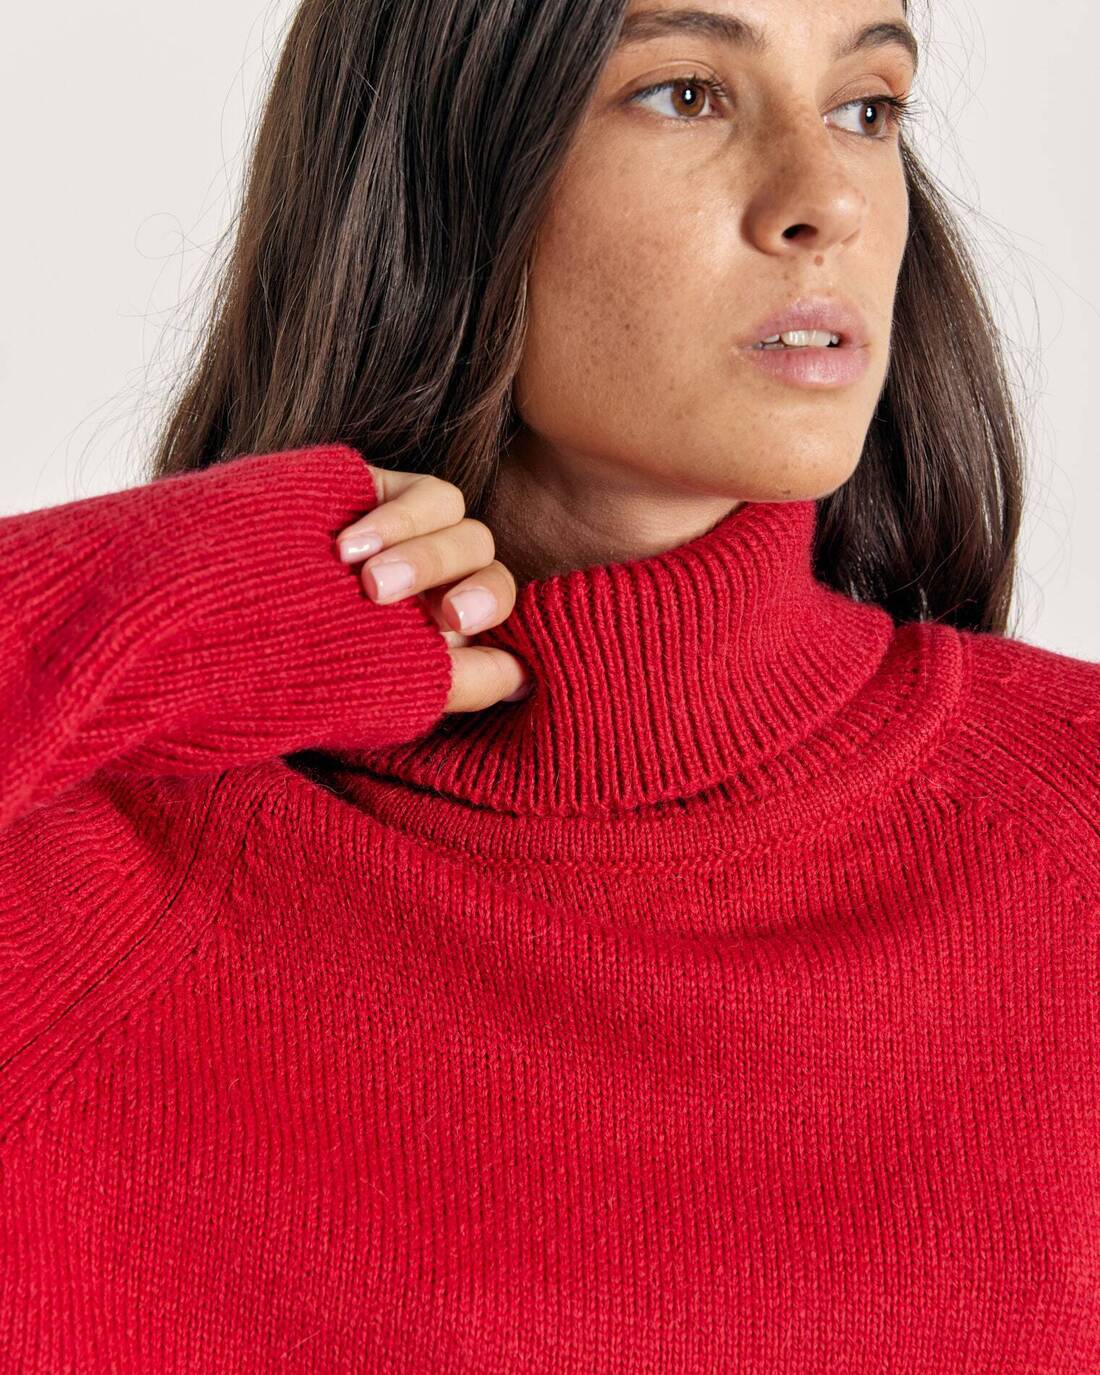 Voluminous sweater made of soft yarn